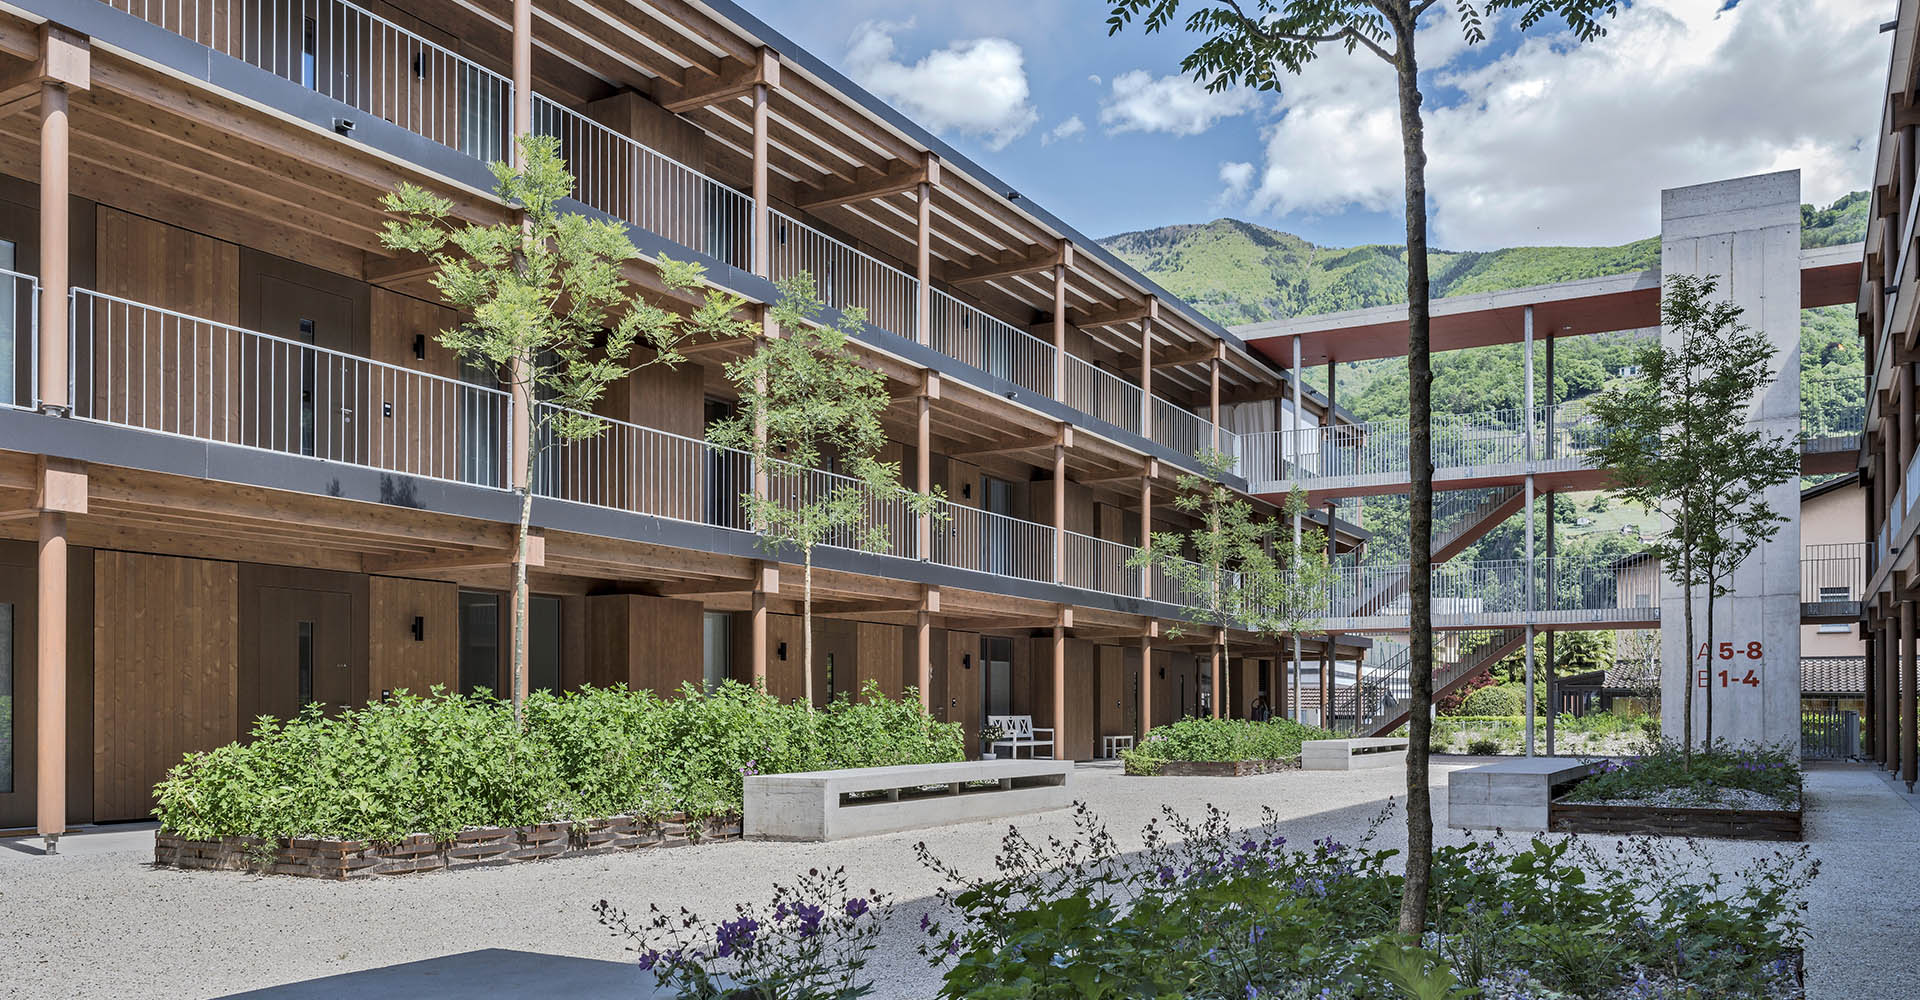 Il complesso residenziale Ghiringhelli con tanto spazio verde (Foto)